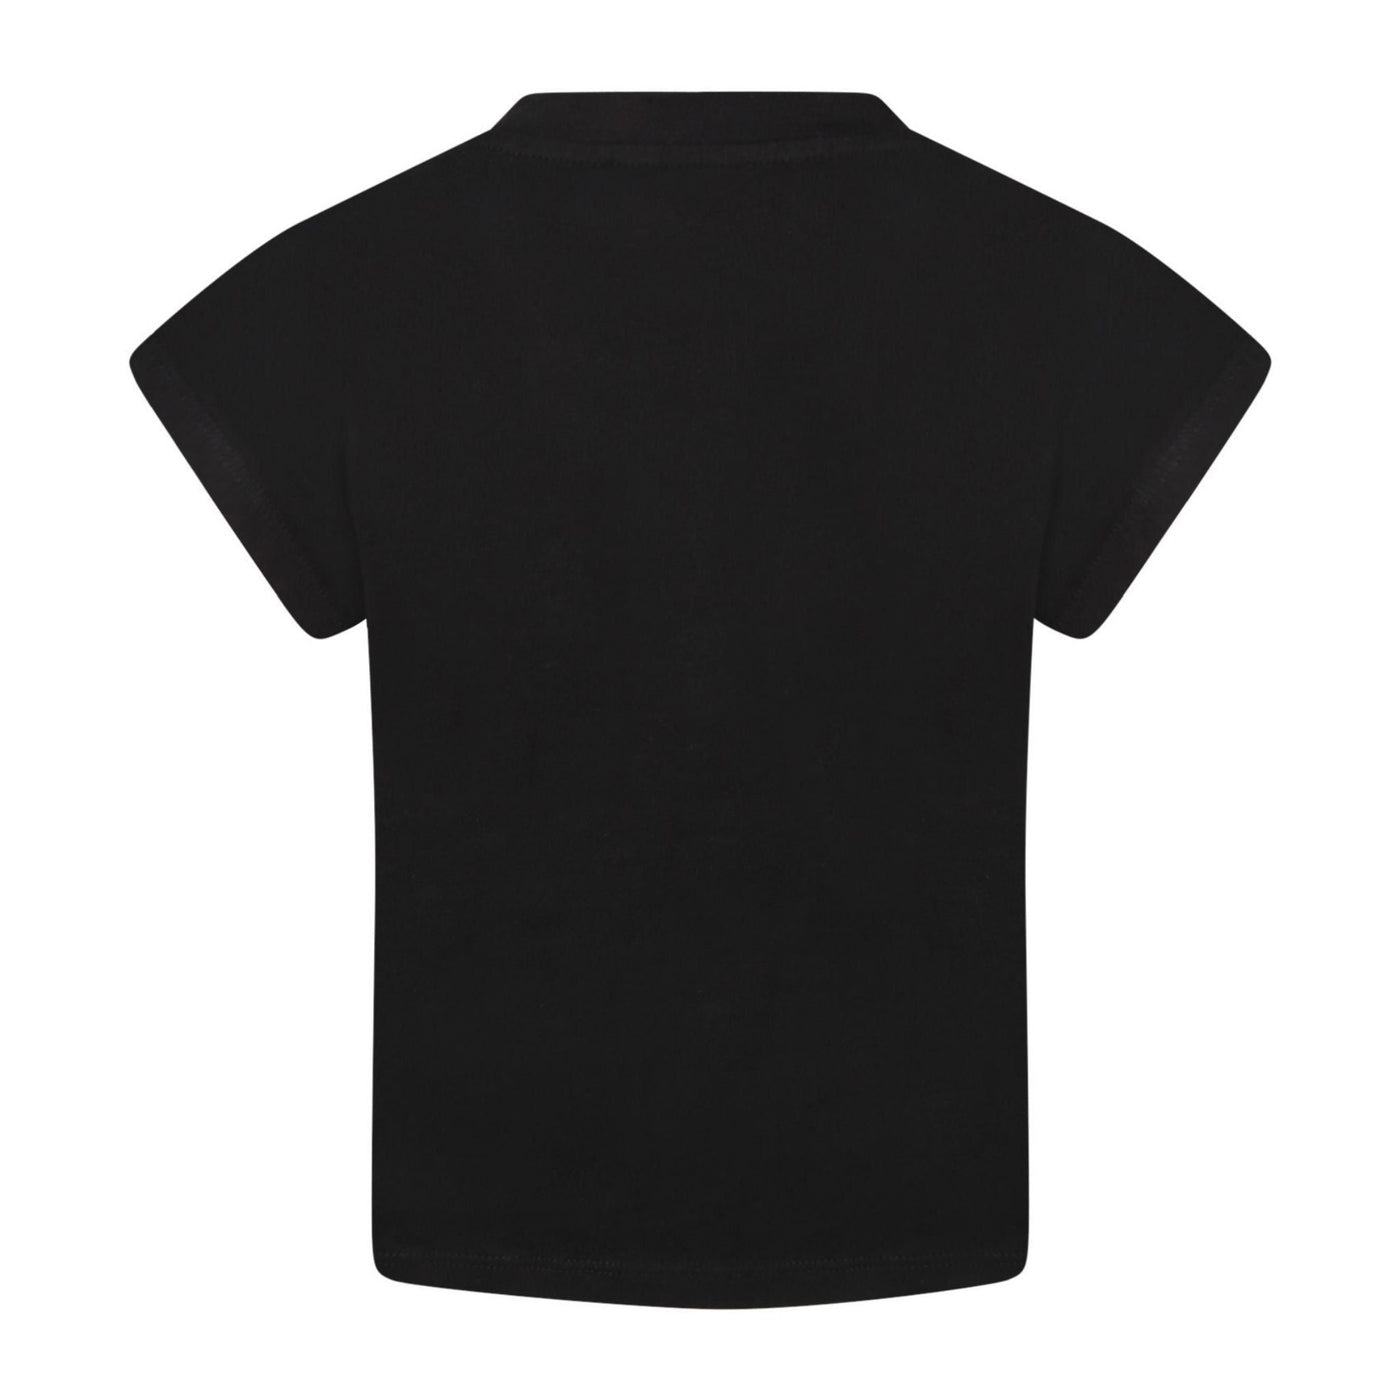 T-shirt bambina nera firmata Dkny vista retro